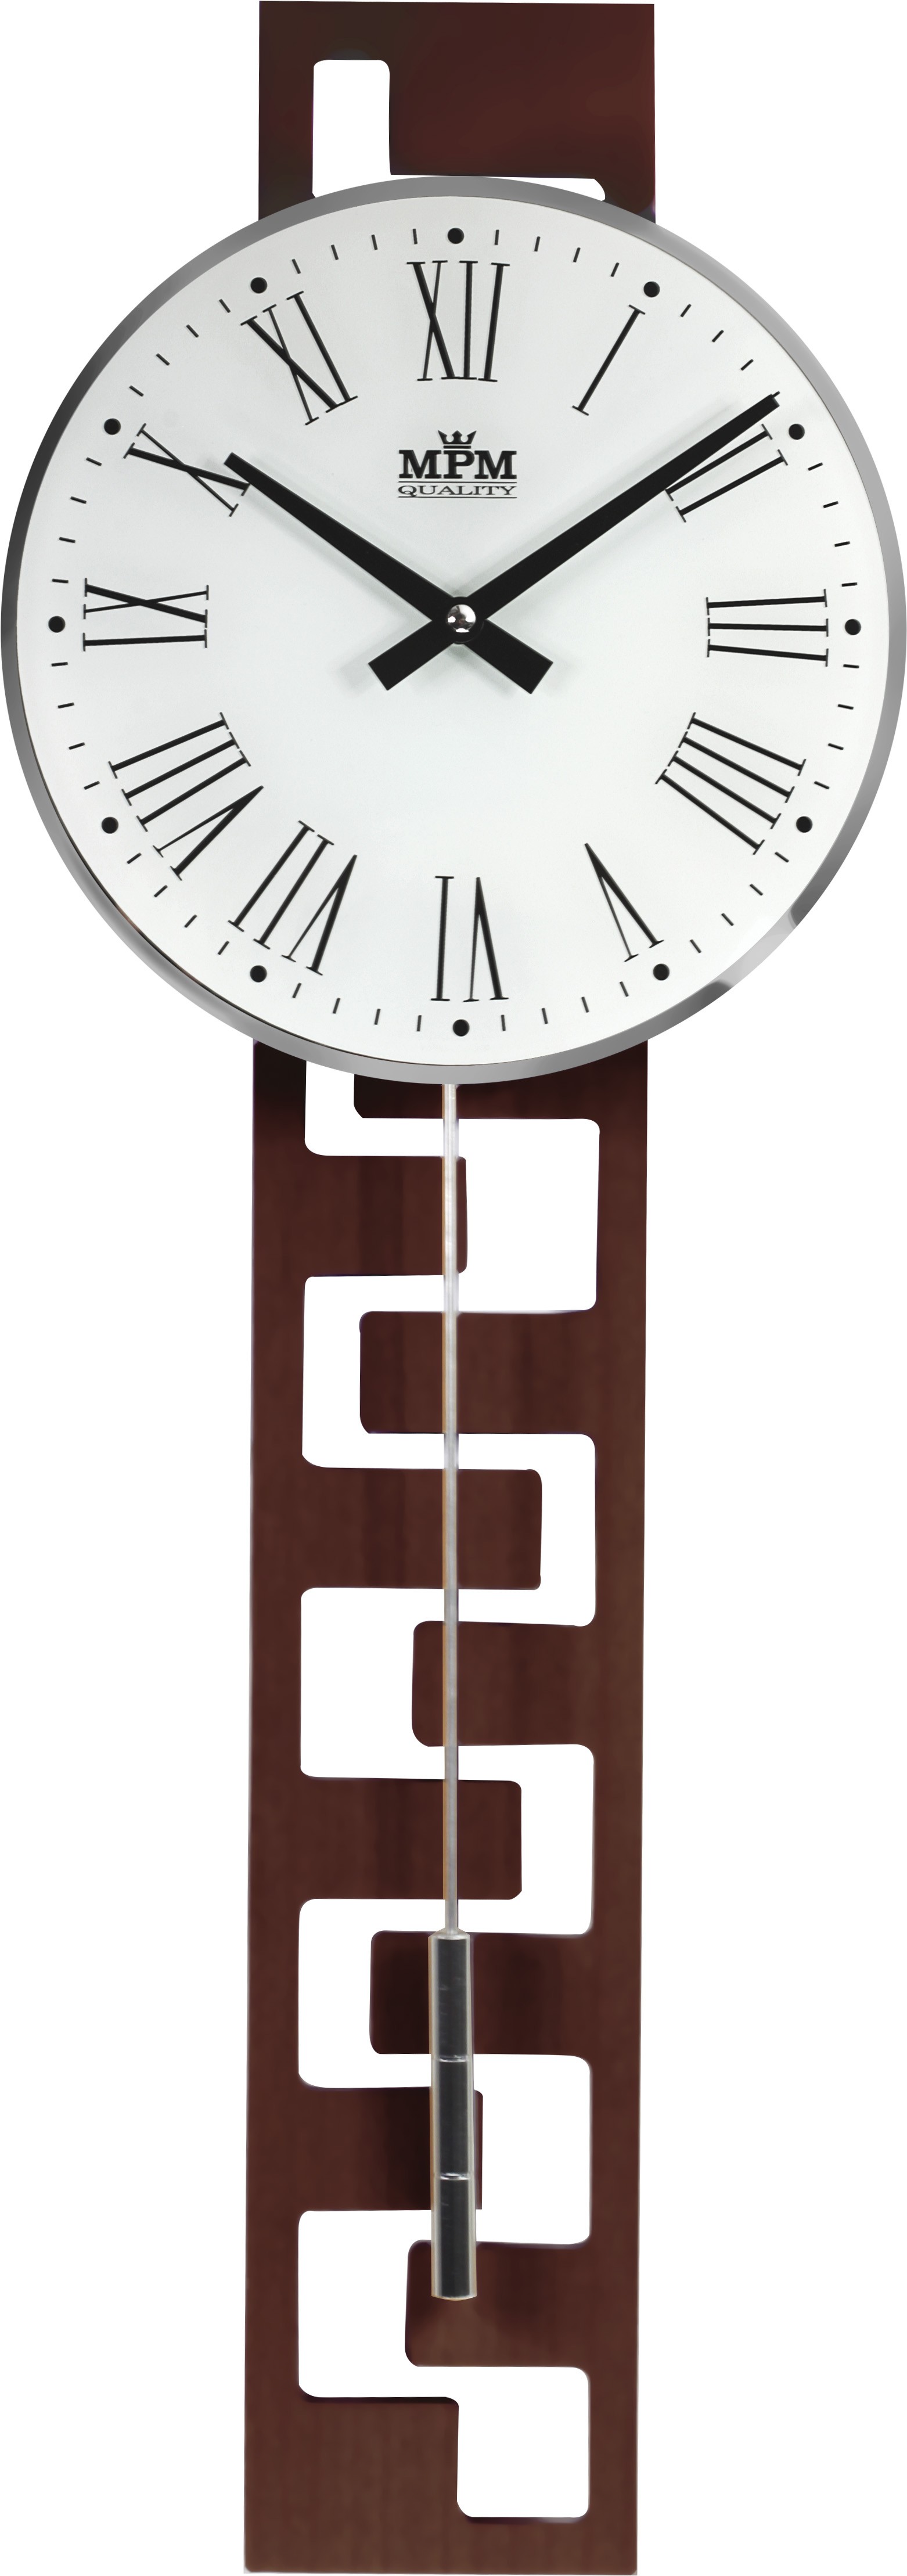 Kyvadlové hodiny MPM 3186.54 tmavé drevo, 71cm